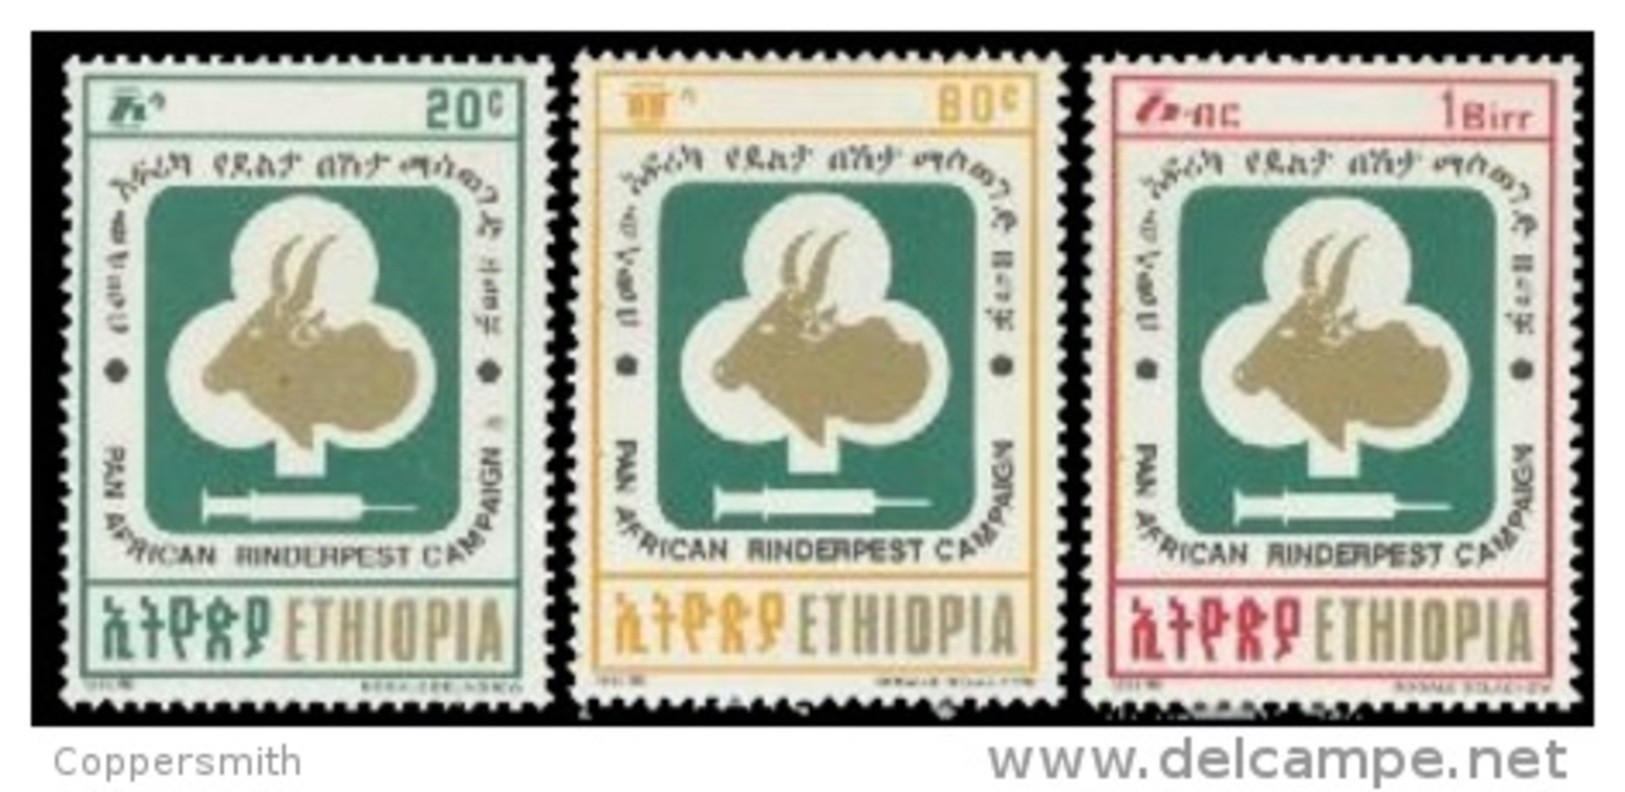 (342) Ethiopia / Ethiopie  Medicine / Animals / Tiere / Dieren / Rinderpest / 1992   ** / Mnh  Michel 1420-22 - Äthiopien